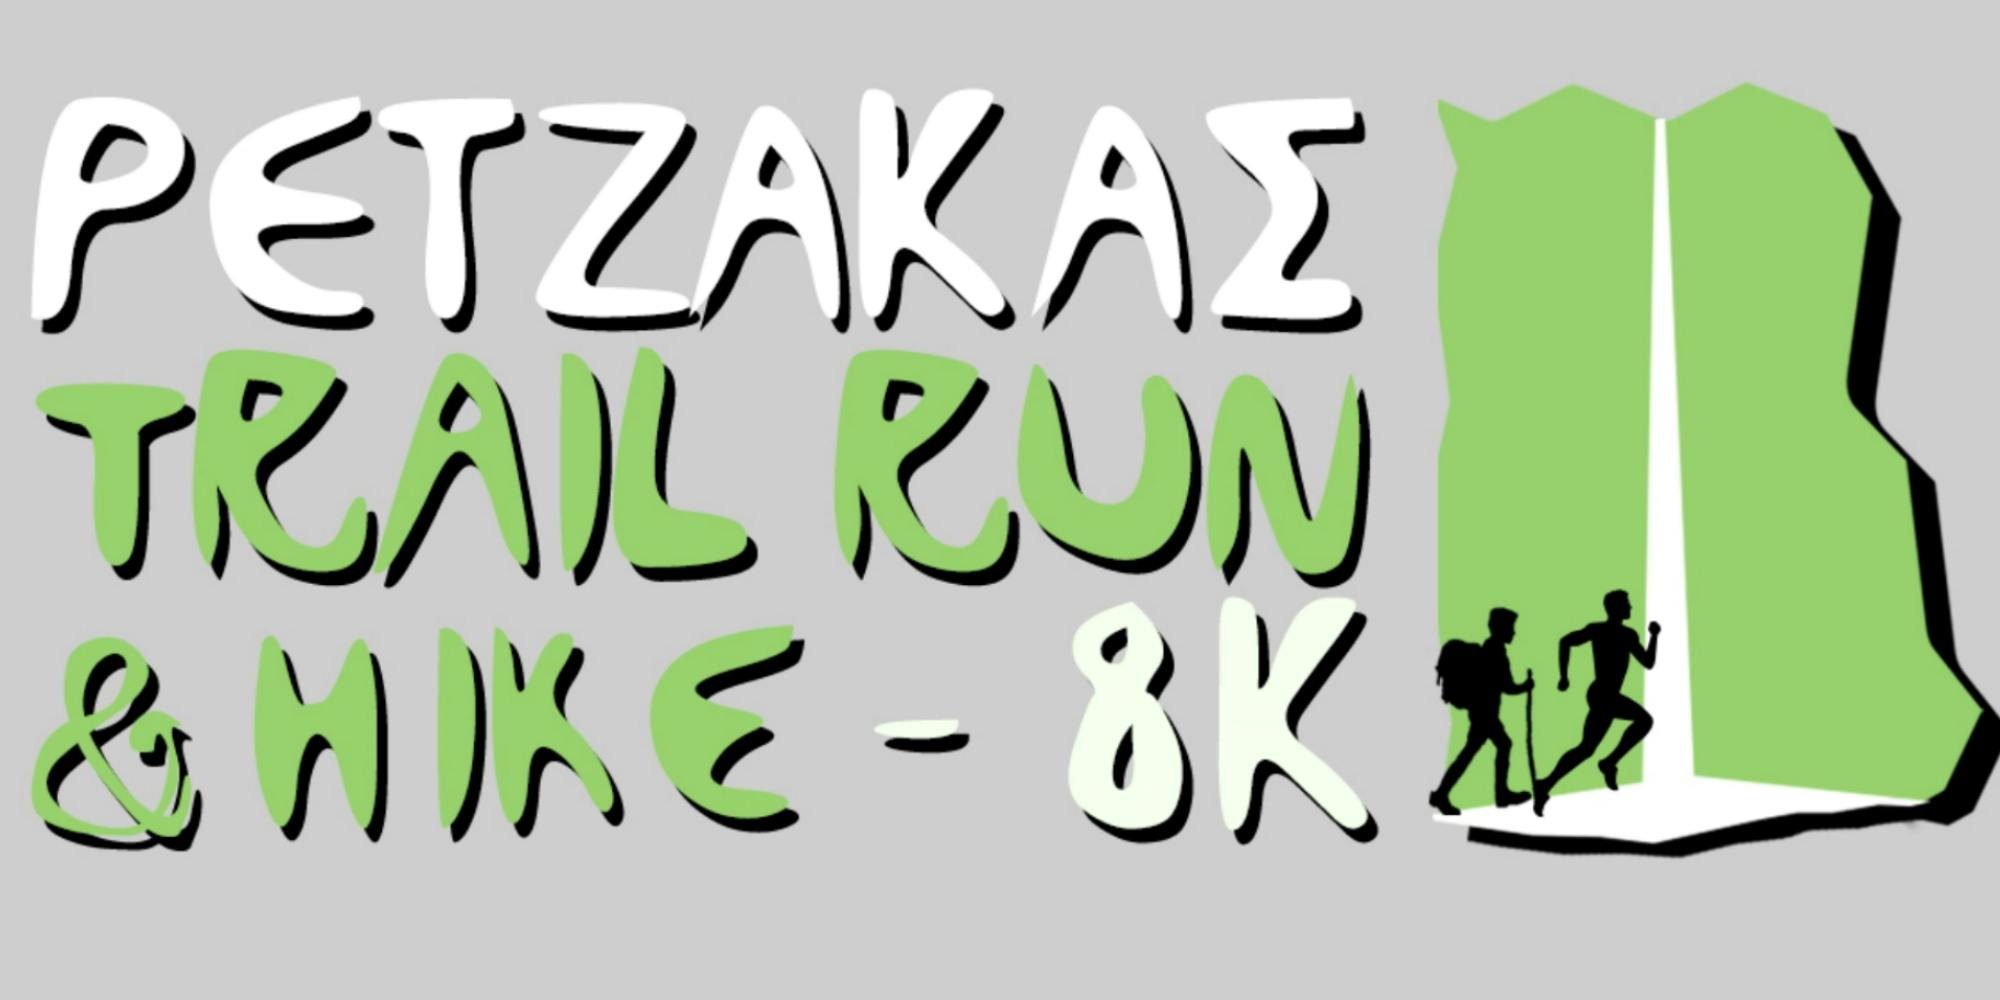 Όλες οι λεπτομέρειες για τον «Ρέτζακα Trail Run & Hike 2022»